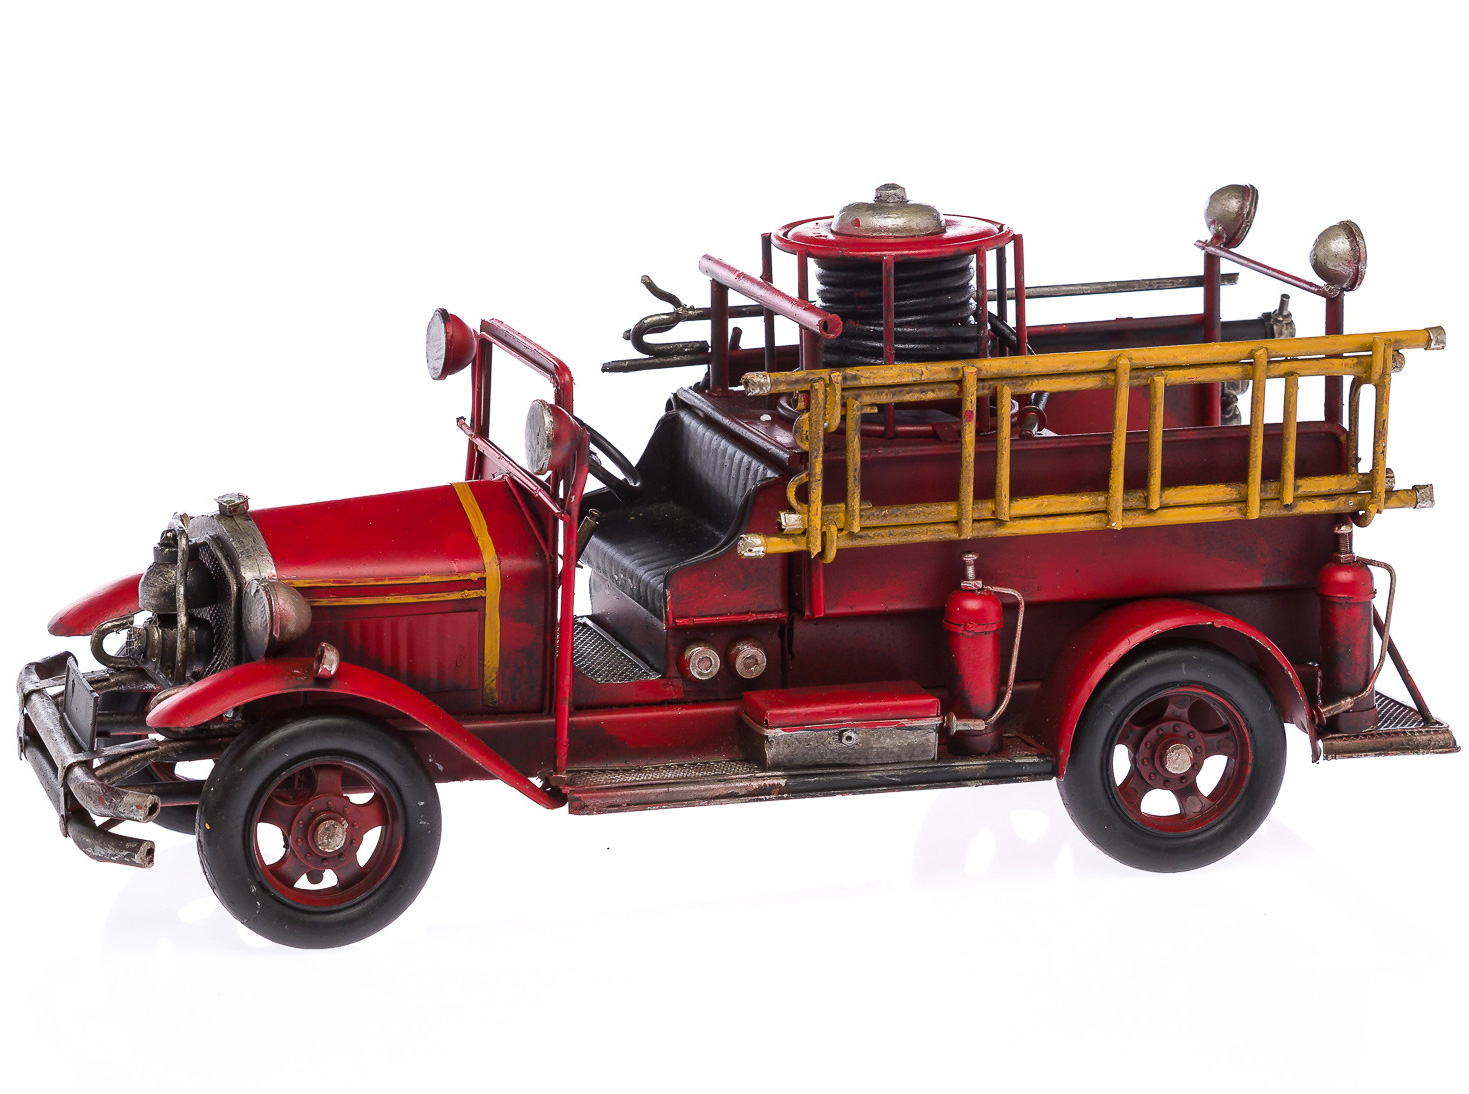 Feuerwehrauto Modellfahrzeug Feuerwehr Modell Nostalgie Antik-Stil